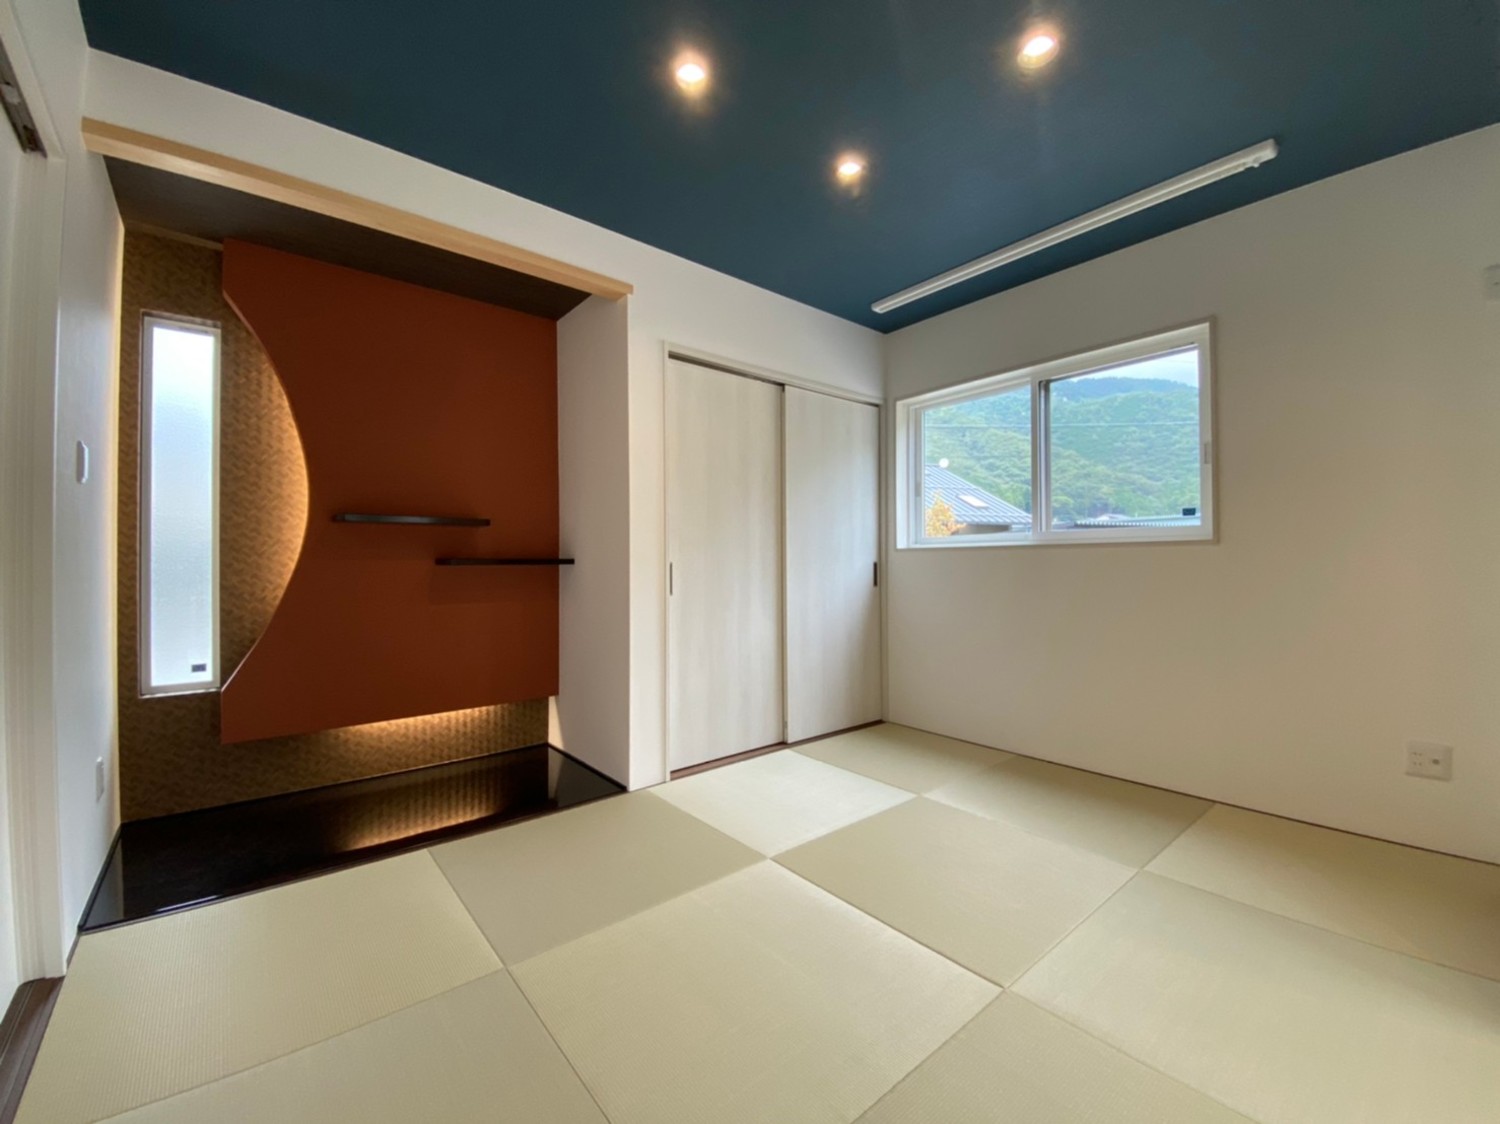 「回遊式動線+広々リビング+モダン和室+小粋な床の間」みんなが暮らしやすいお家